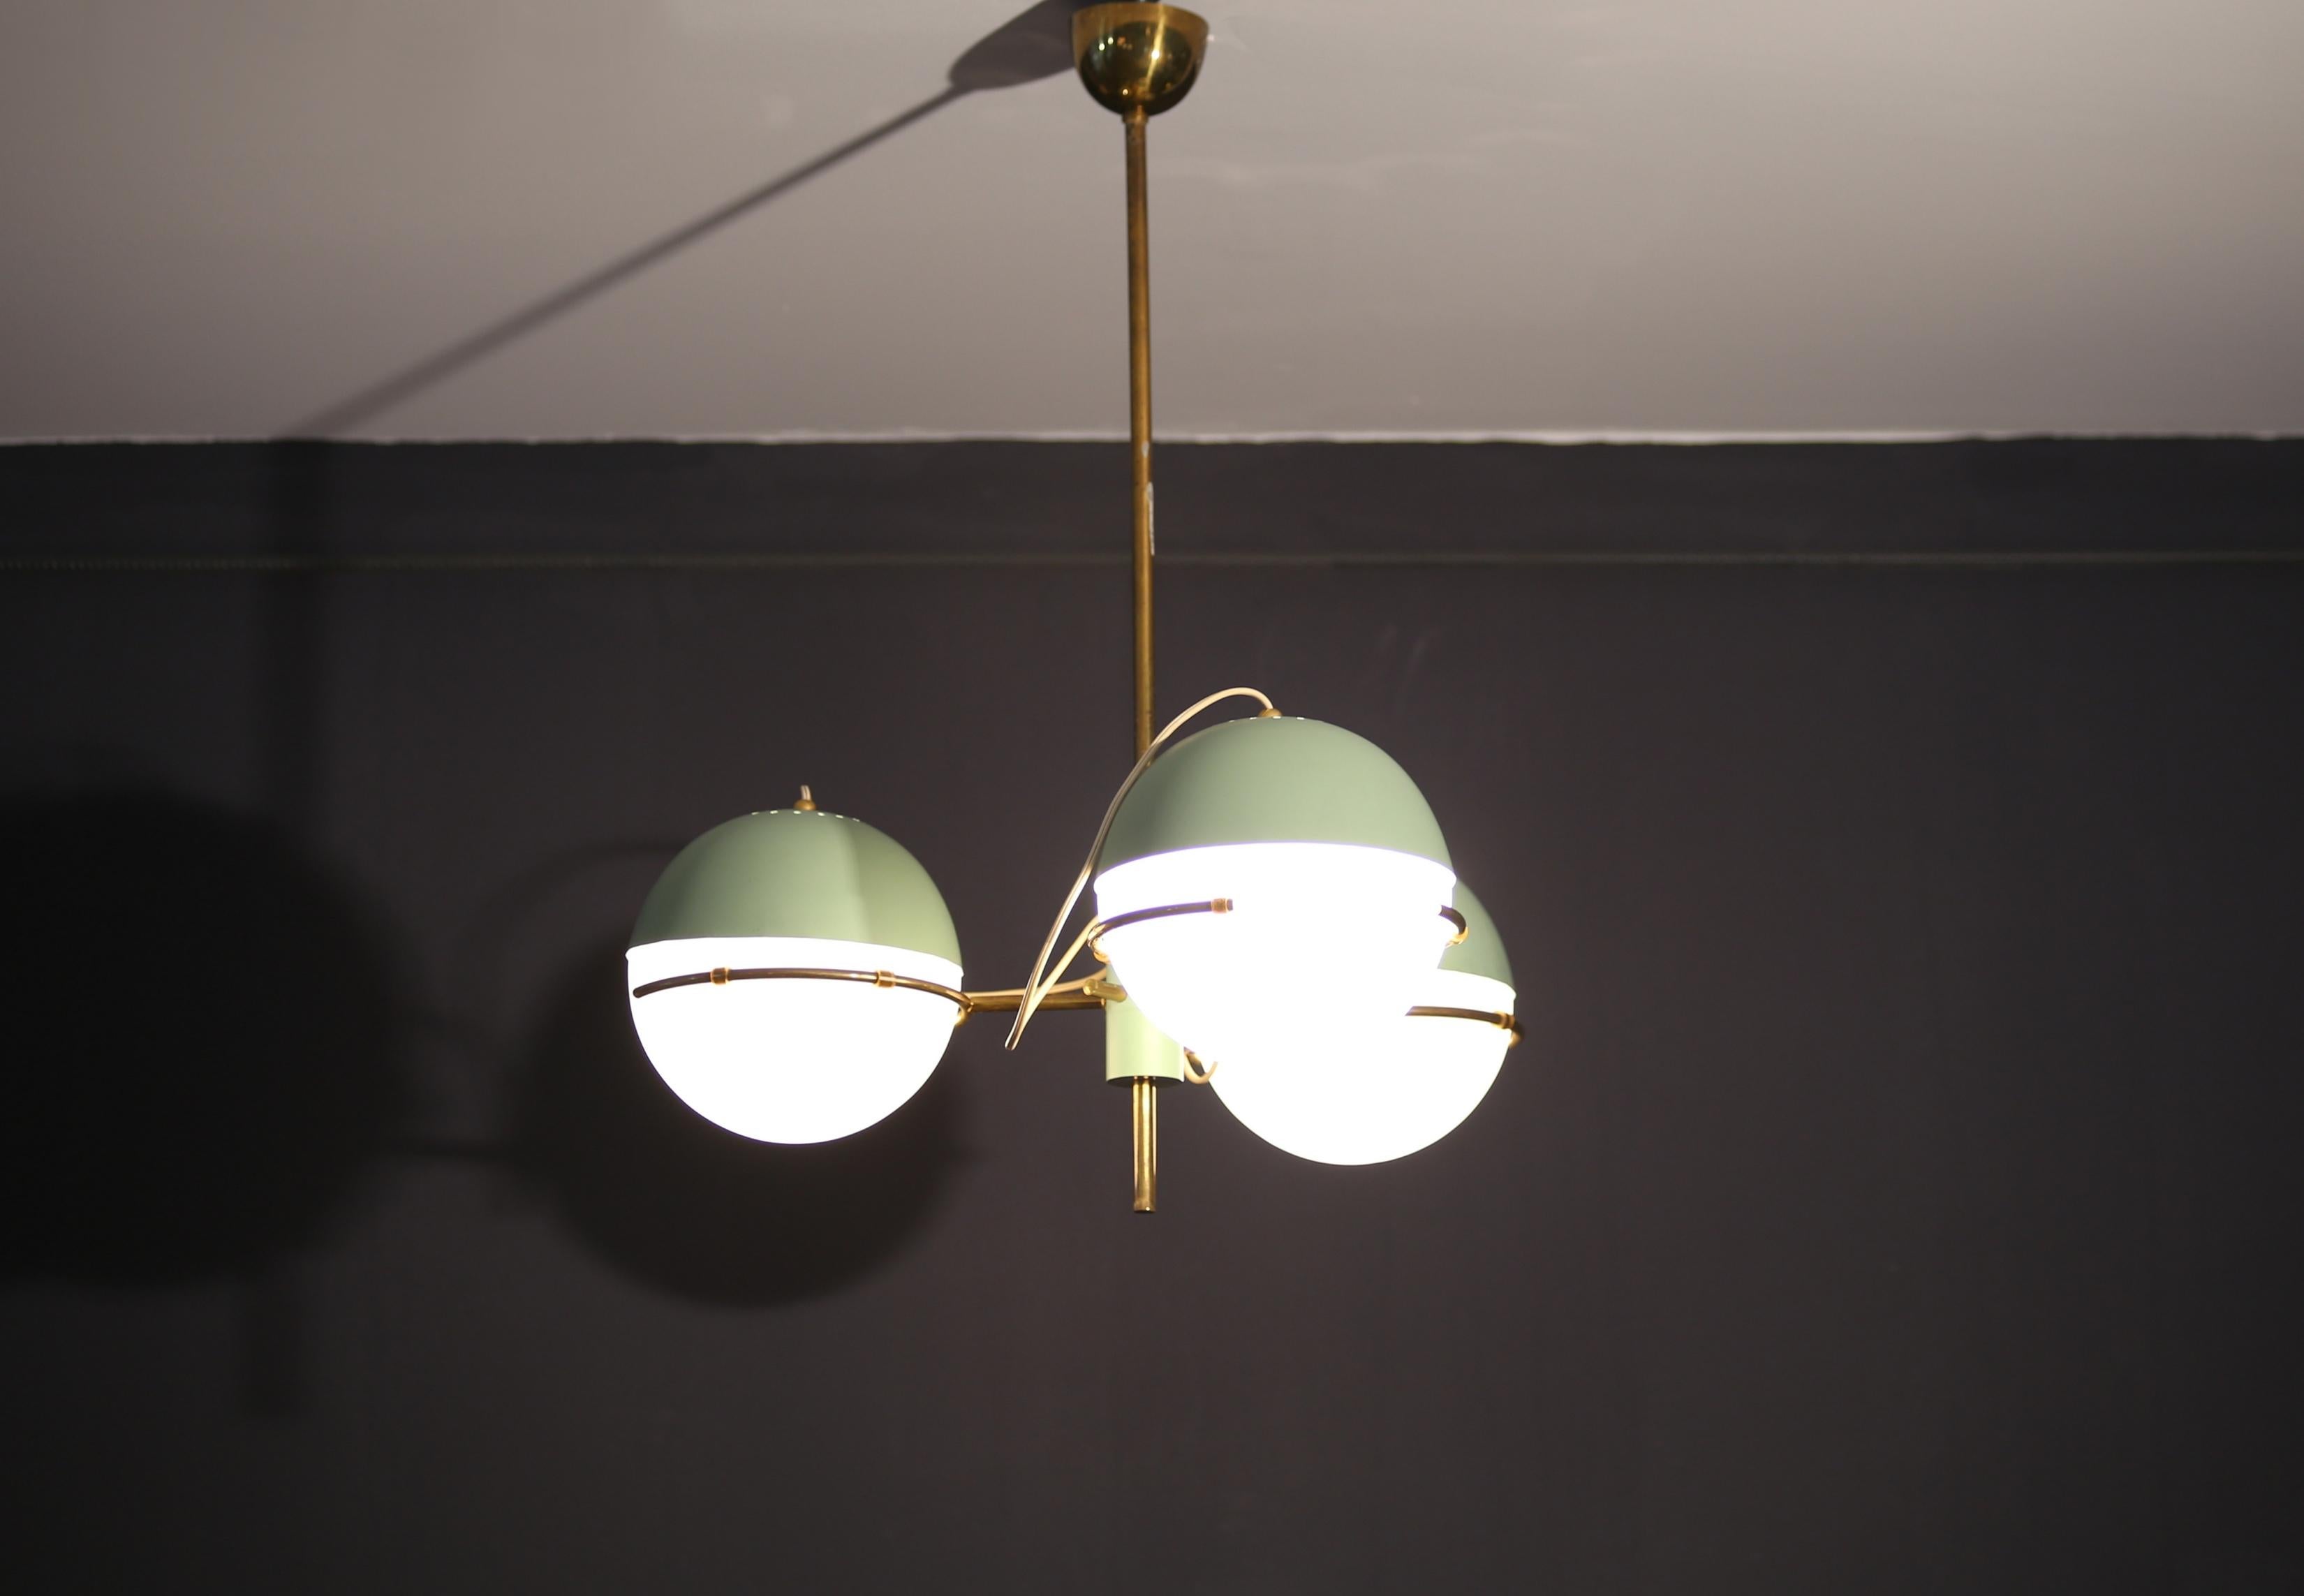 Stilnovo
Lampe suspendue à trois lumières, avec structure en laiton et diffuseurs en verre opale.
Production de Stilnovo dans les années 1950.